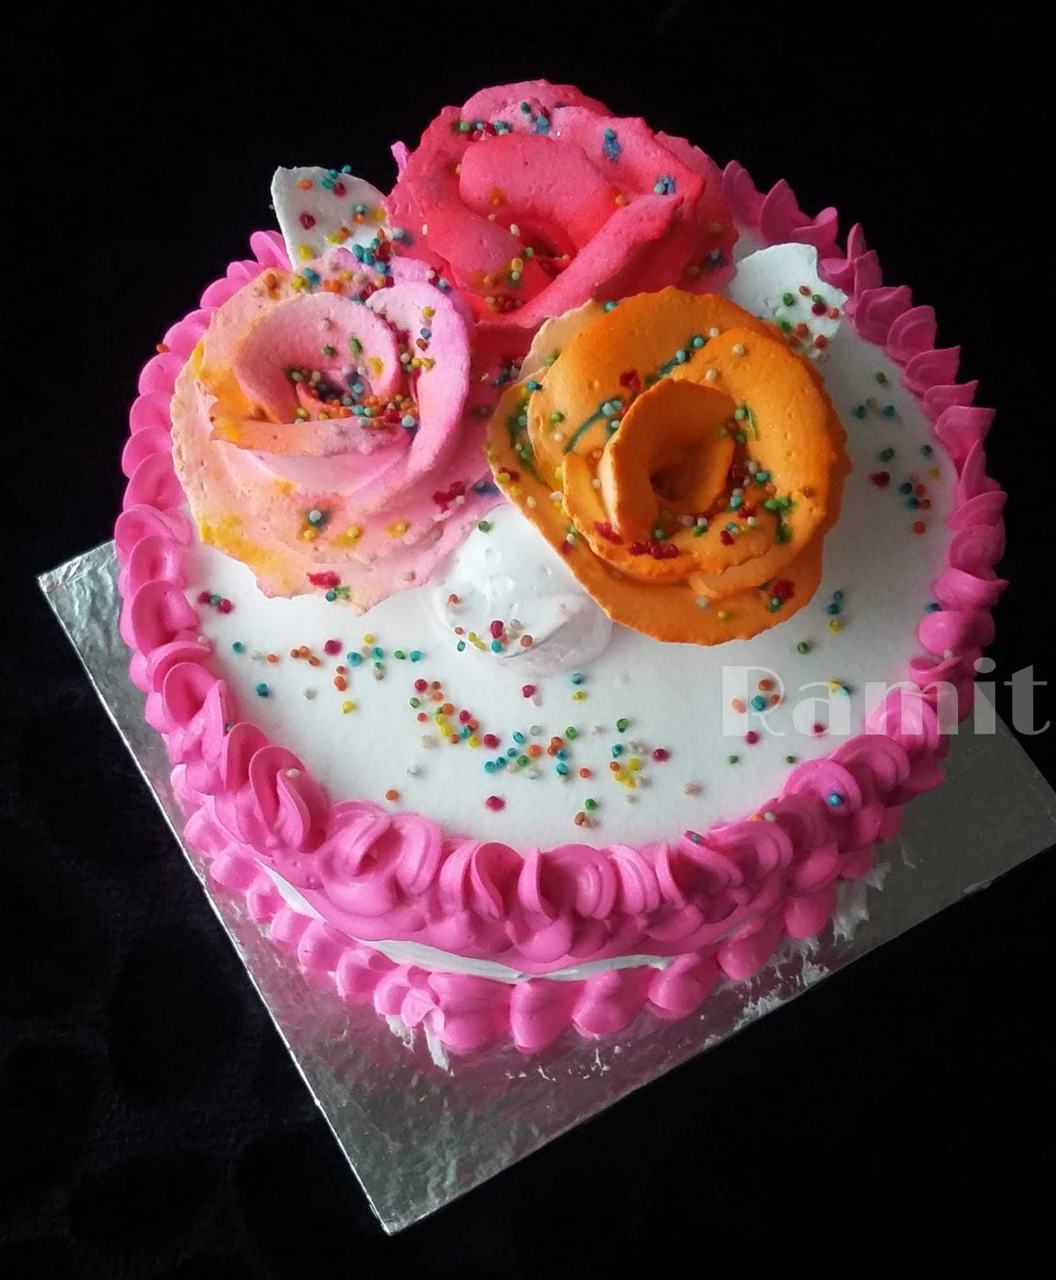 "Colourful Holi Cake"